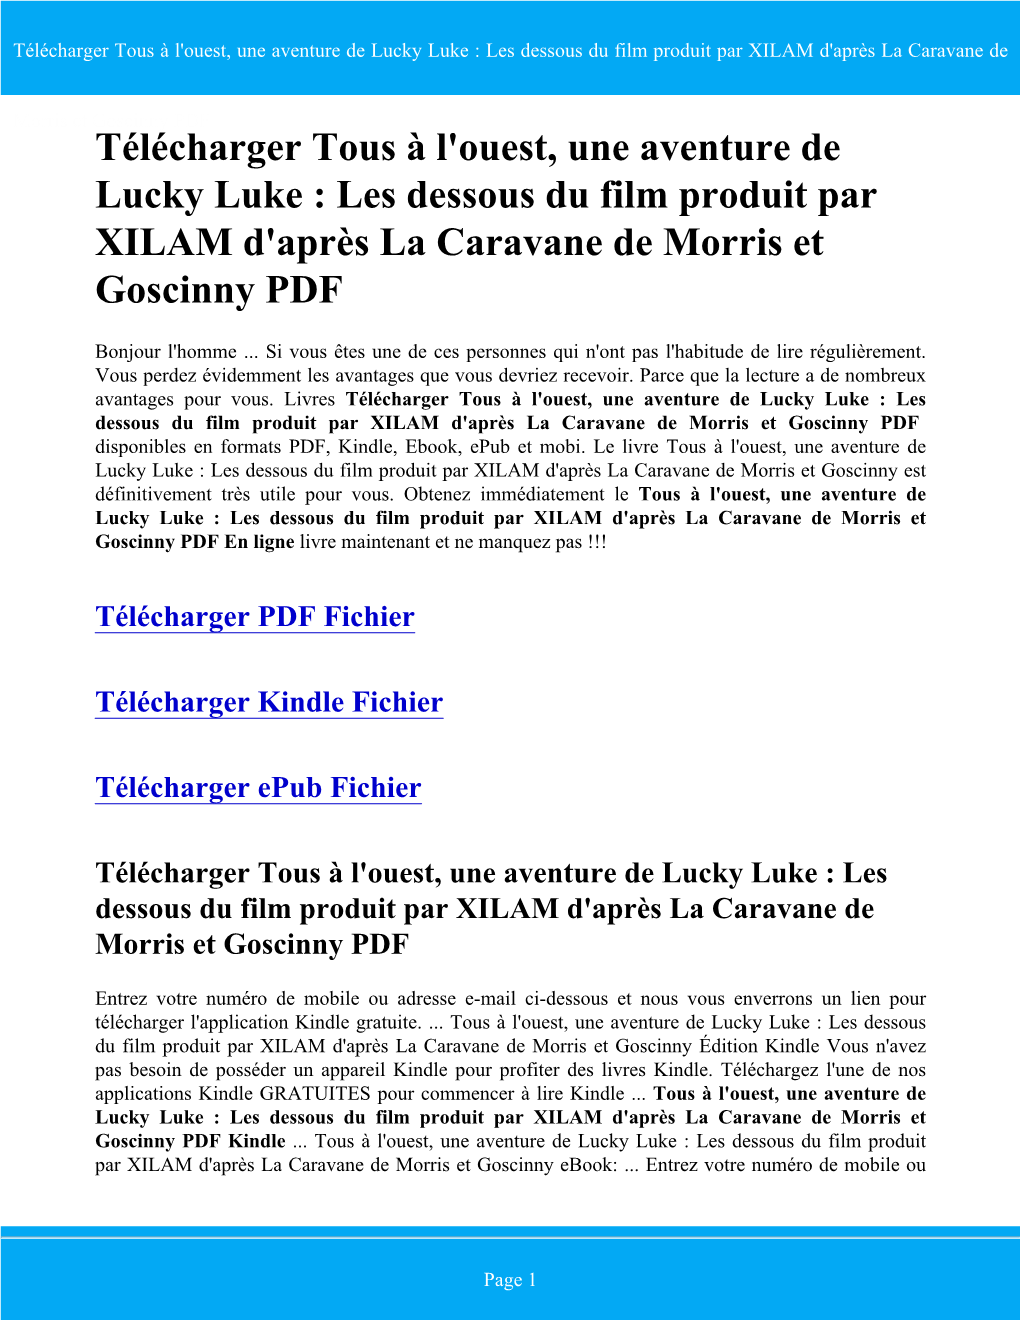 Télécharger Tous À L'ouest, Une Aventure De Lucky Luke : Les Dessous Du Film Produit Par XILAM D'après La Caravane De